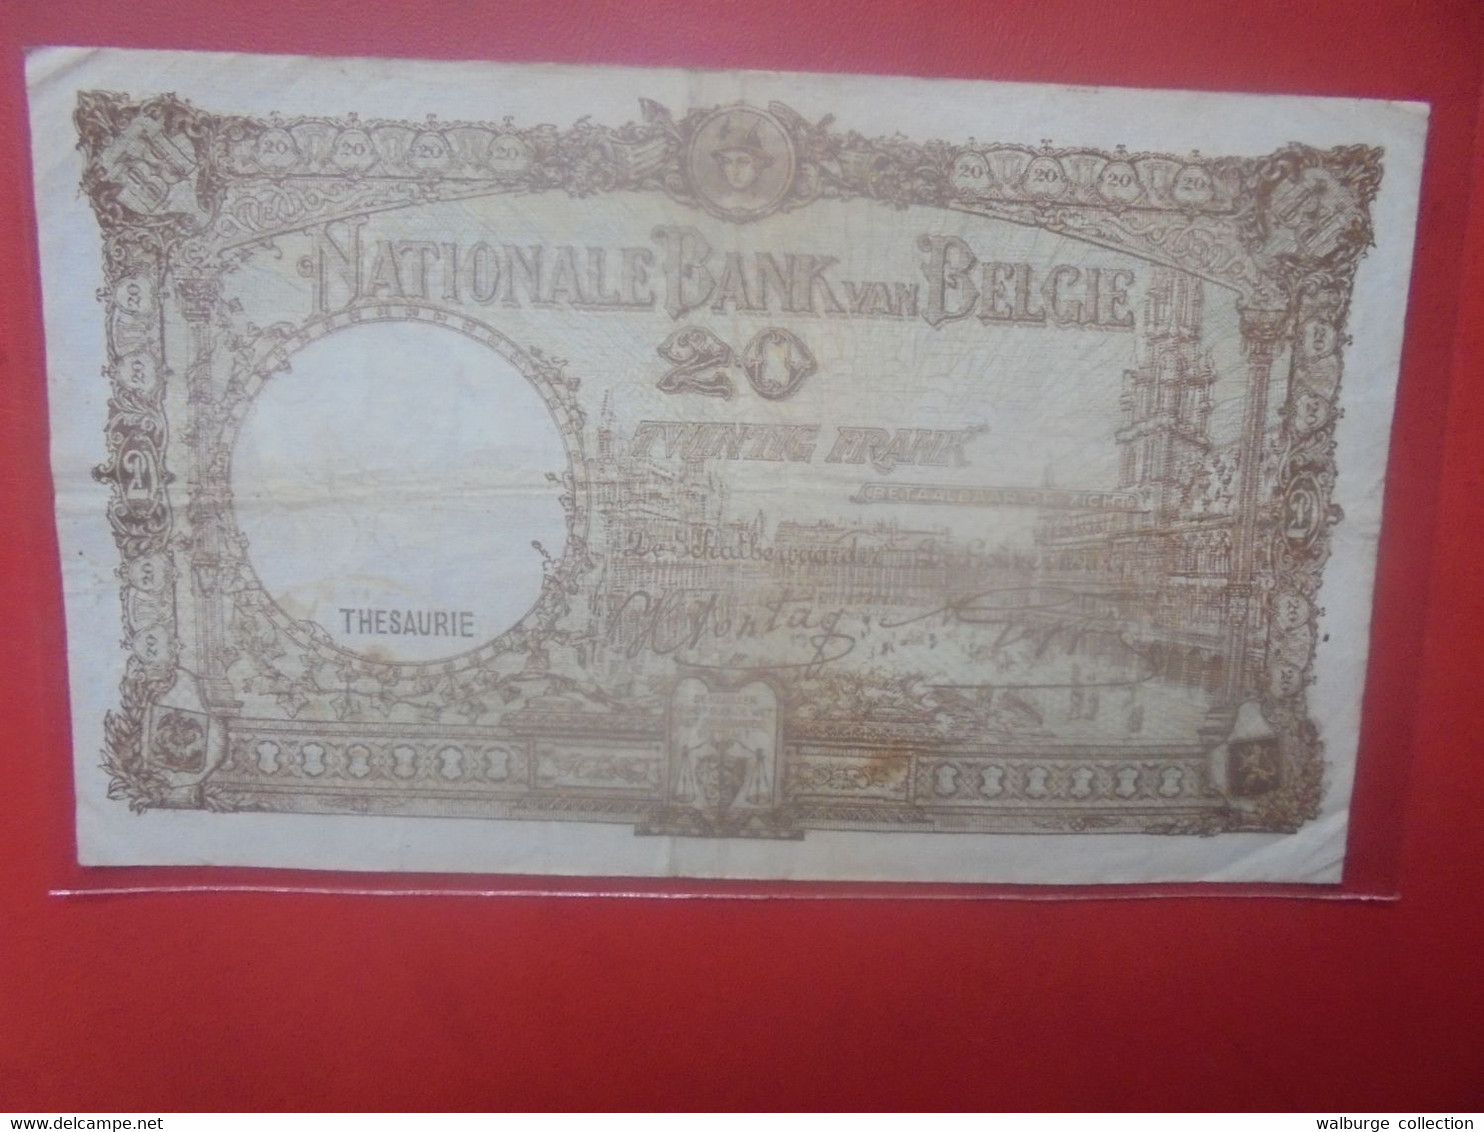 BELGIQUE 20 Francs 1941 Circuler (B.29) - 20 Francs